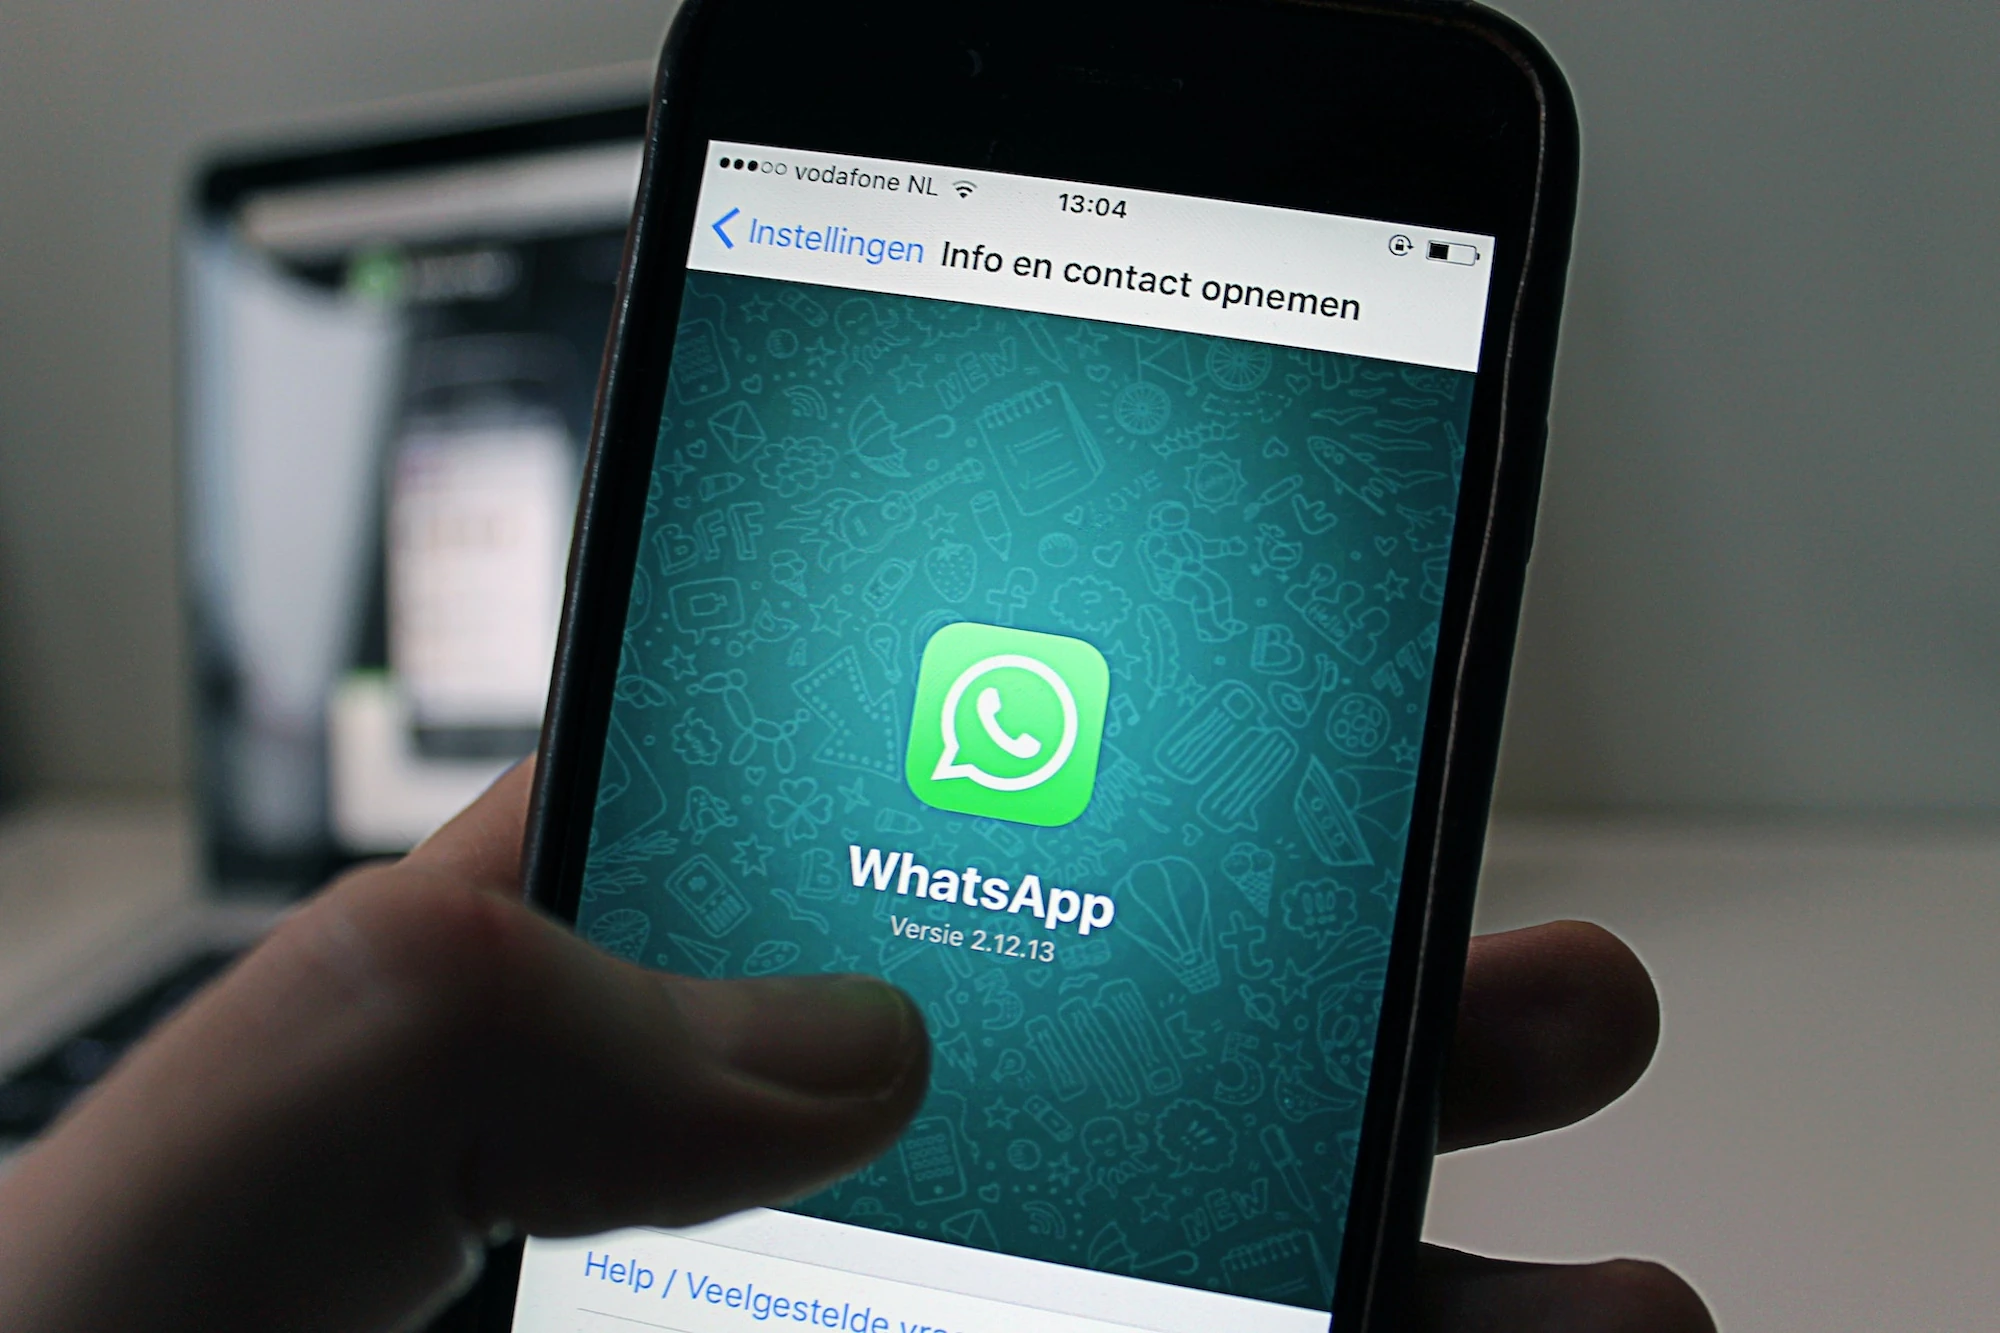 WhatsApp multi dispositivo un tutorial su come utilizzare WhatsApp su pi? smartphone e dispositivi